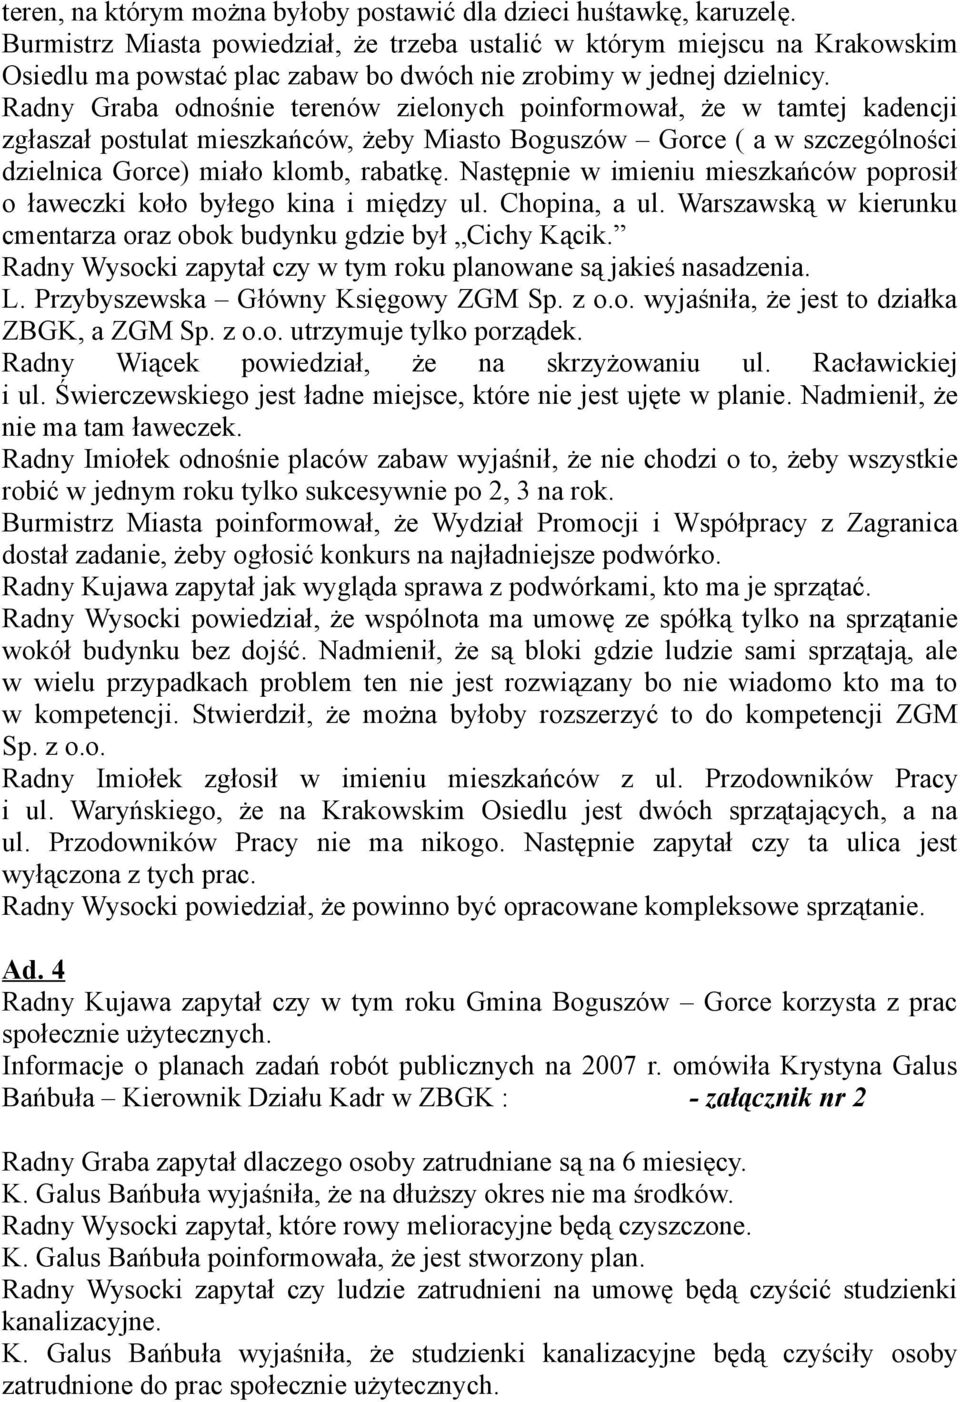 Radny Graba odnośnie terenów zielonych poinformował, że w tamtej kadencji zgłaszał postulat mieszkańców, żeby Miasto Boguszów Gorce ( a w szczególności dzielnica Gorce) miało klomb, rabatkę.